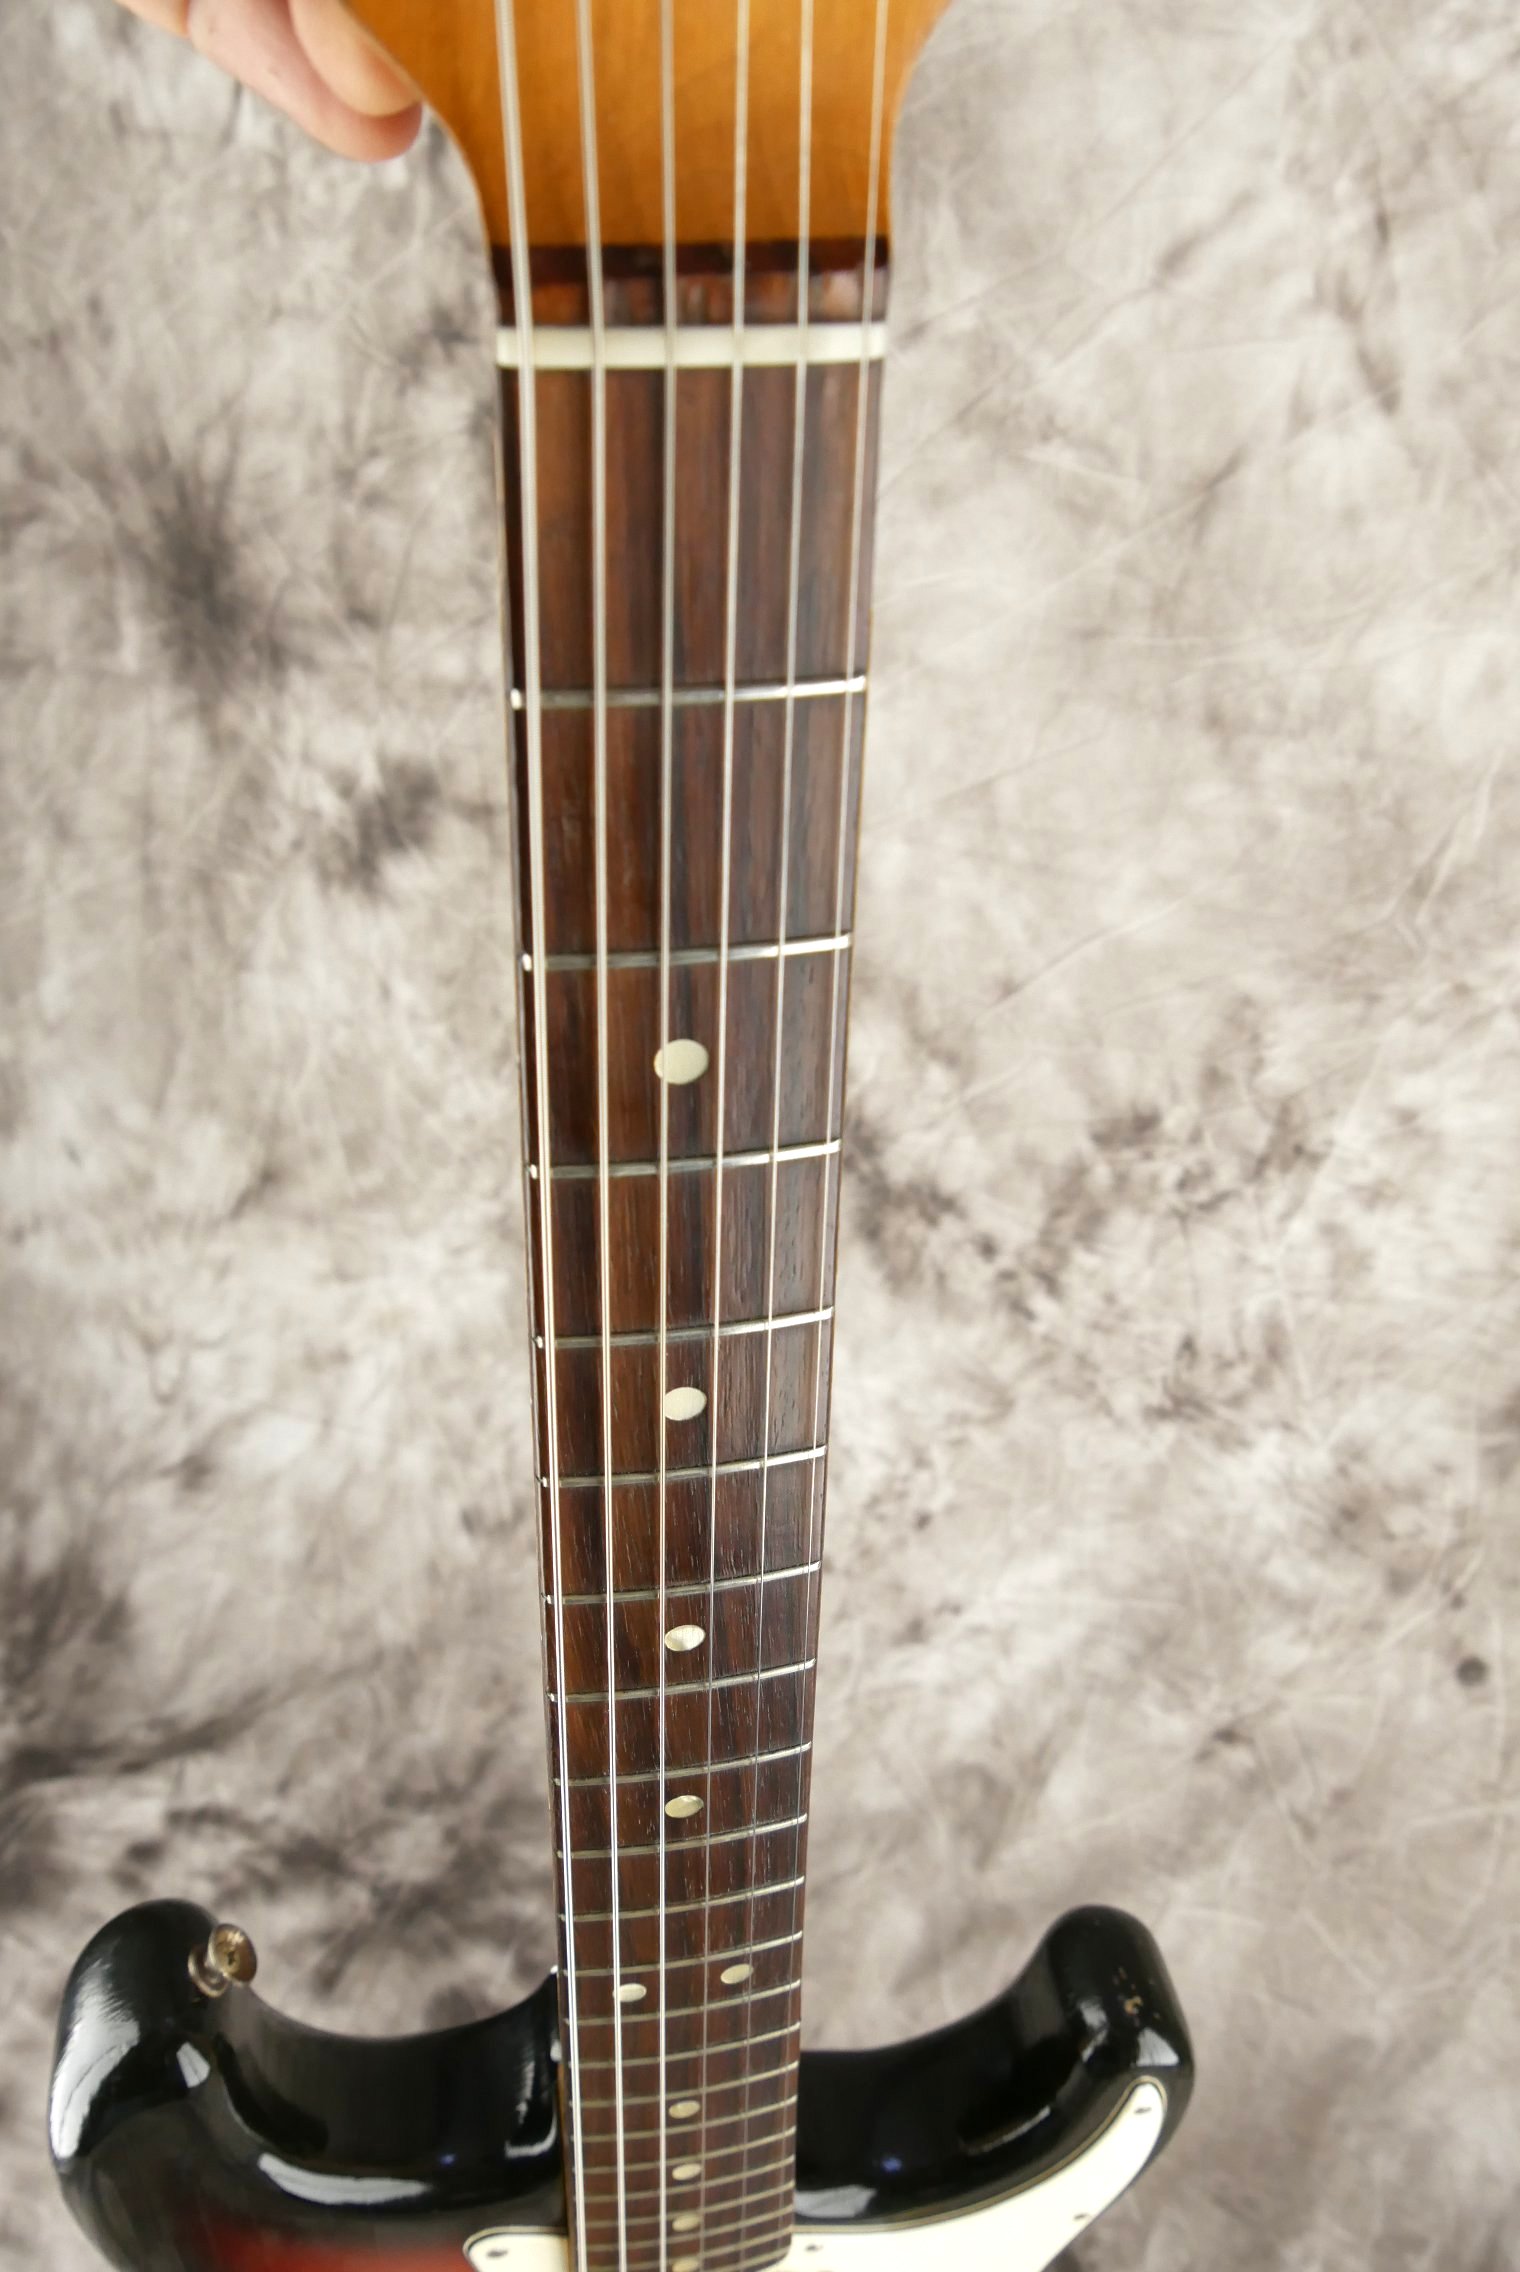 Fender_Stratocaster-1970_sunburst-tremolo-012.JPG